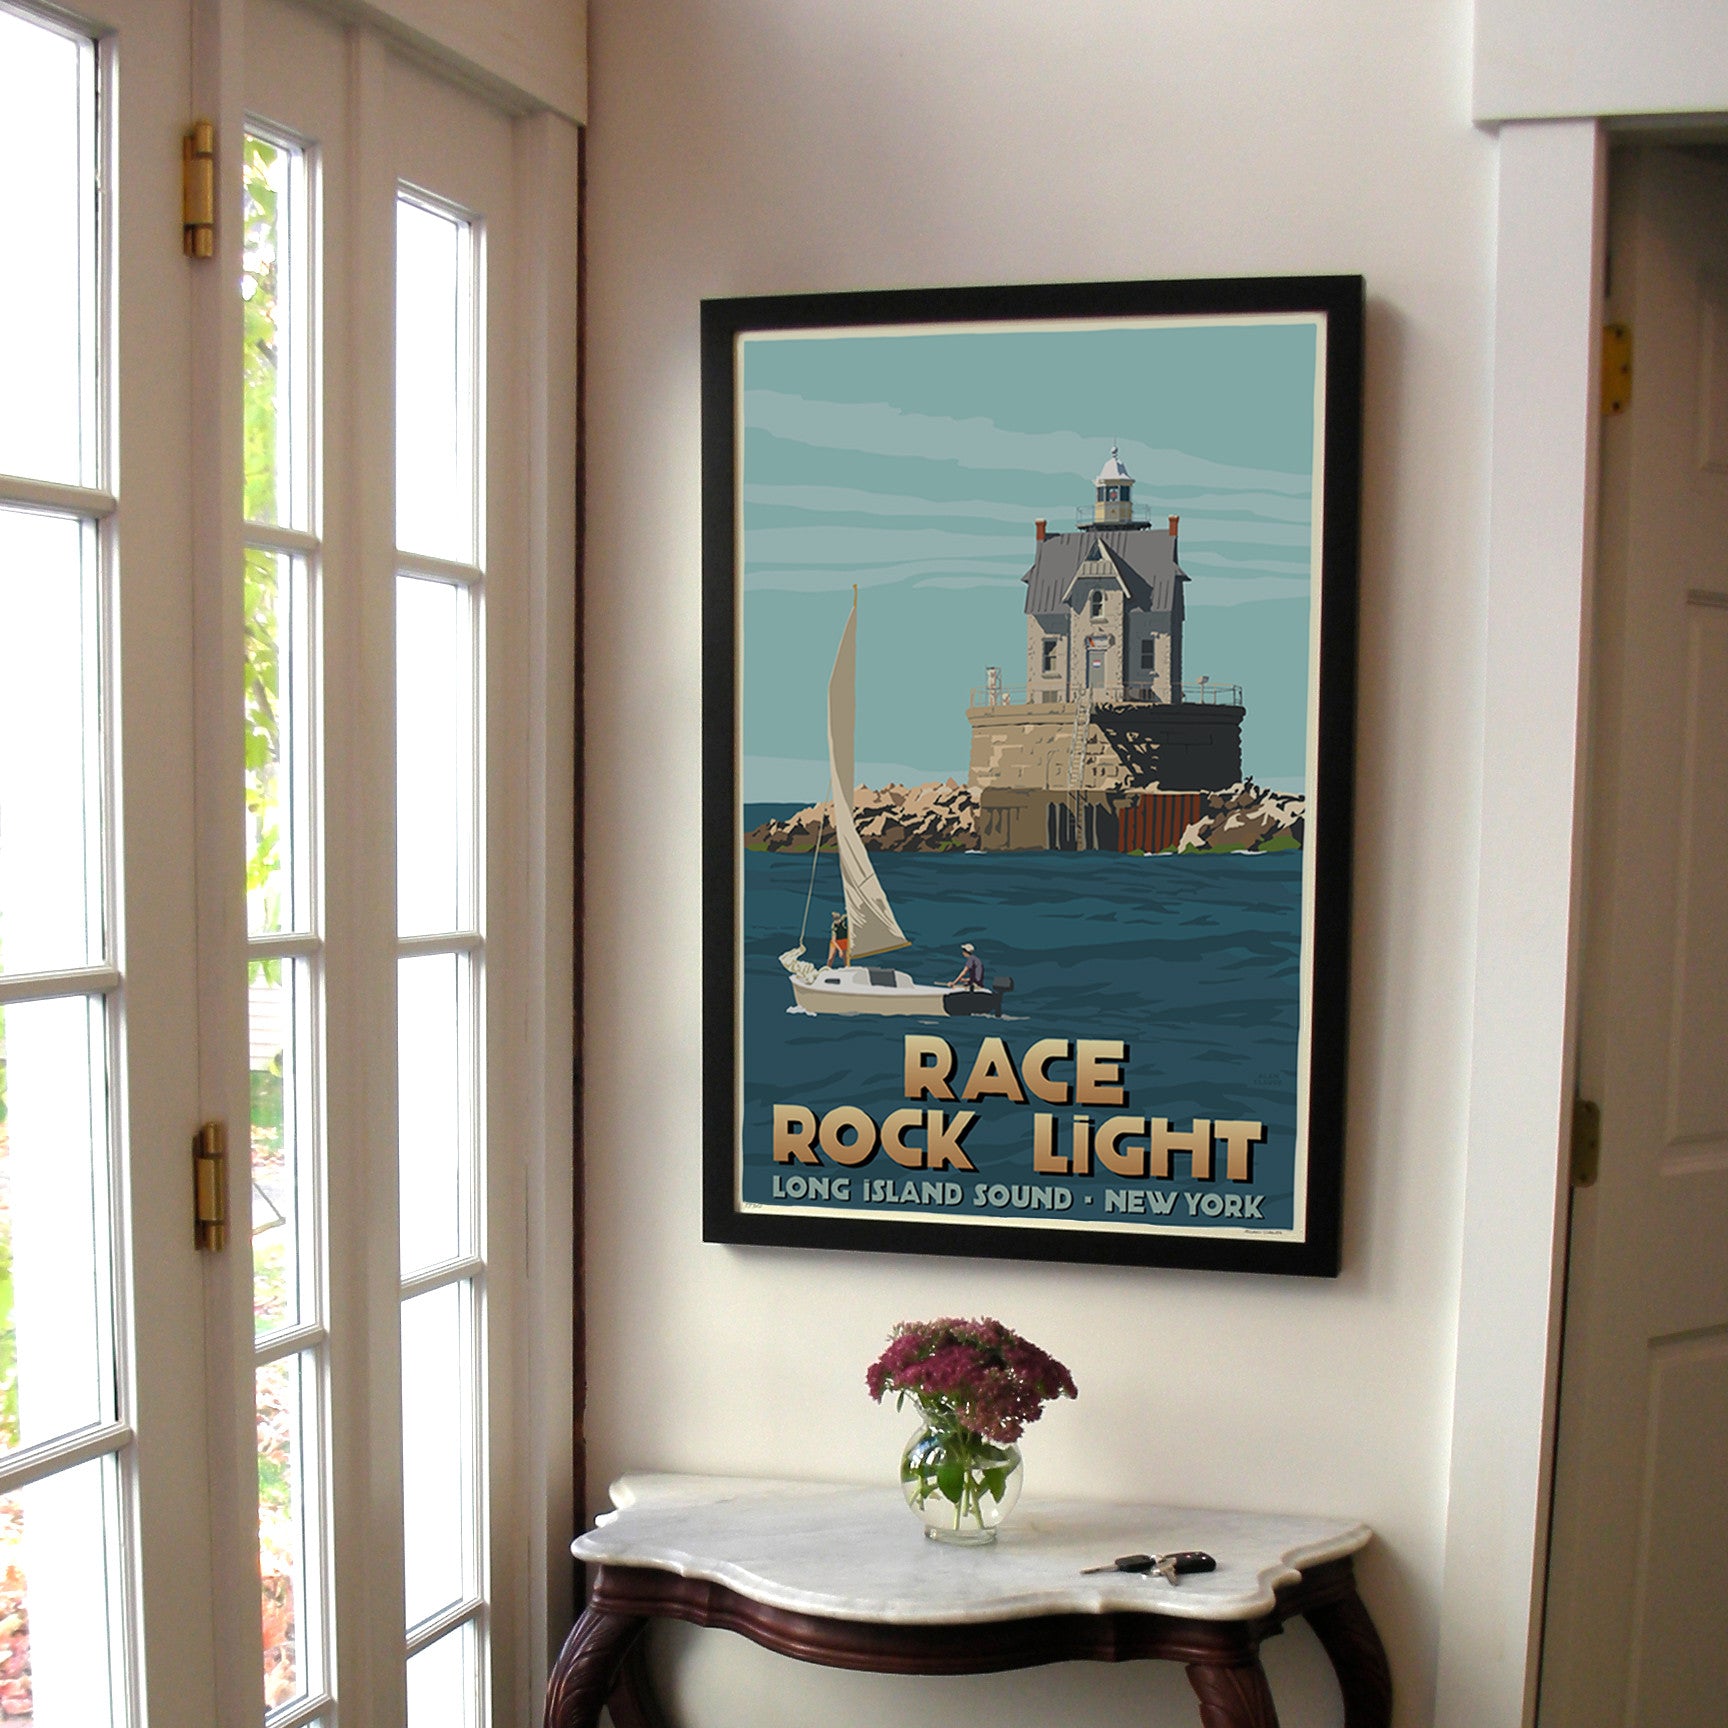 Race Rock Light Art Print 24" x 36" Framed Travel Poster By Alan Claude  - New York